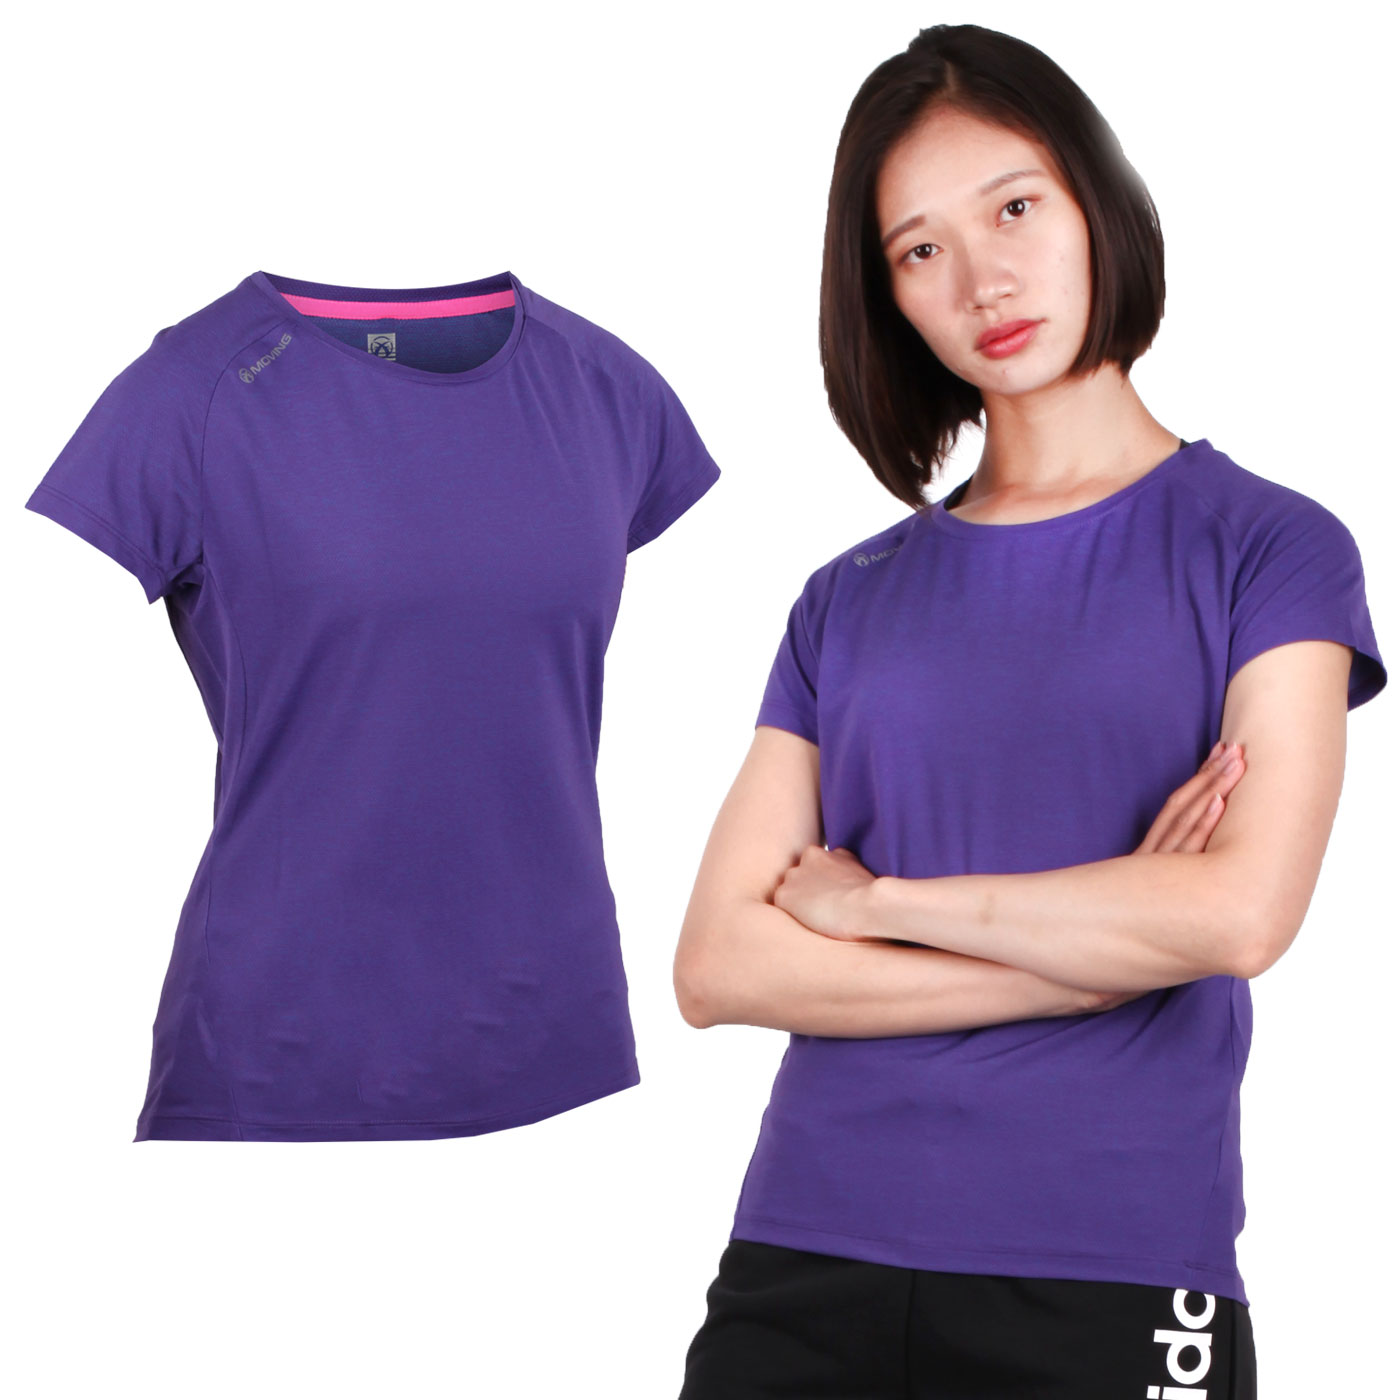 FIRESTAR 女款彈性短袖圓領T恤 DL963-18 - 紫